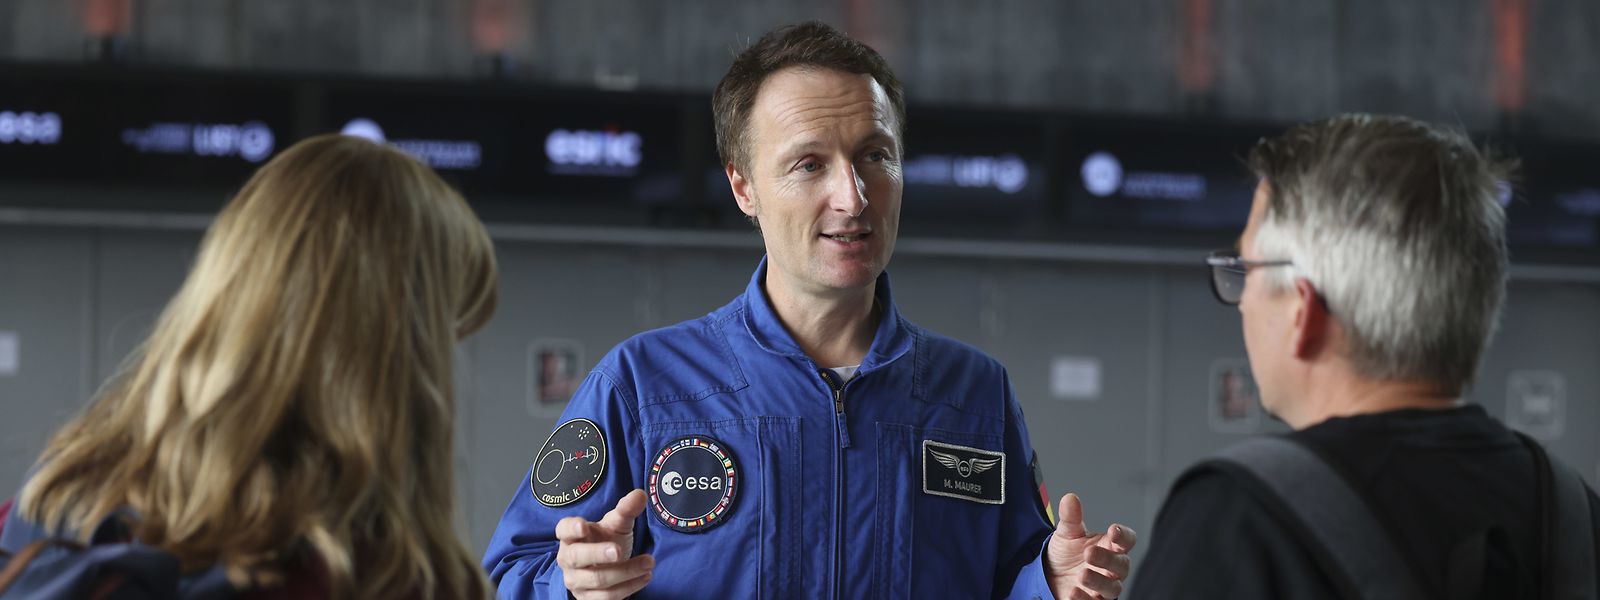 Für den Esa-Astronauten Matthias Maurer übt der Mond eine ganz besondere Faszination aus.